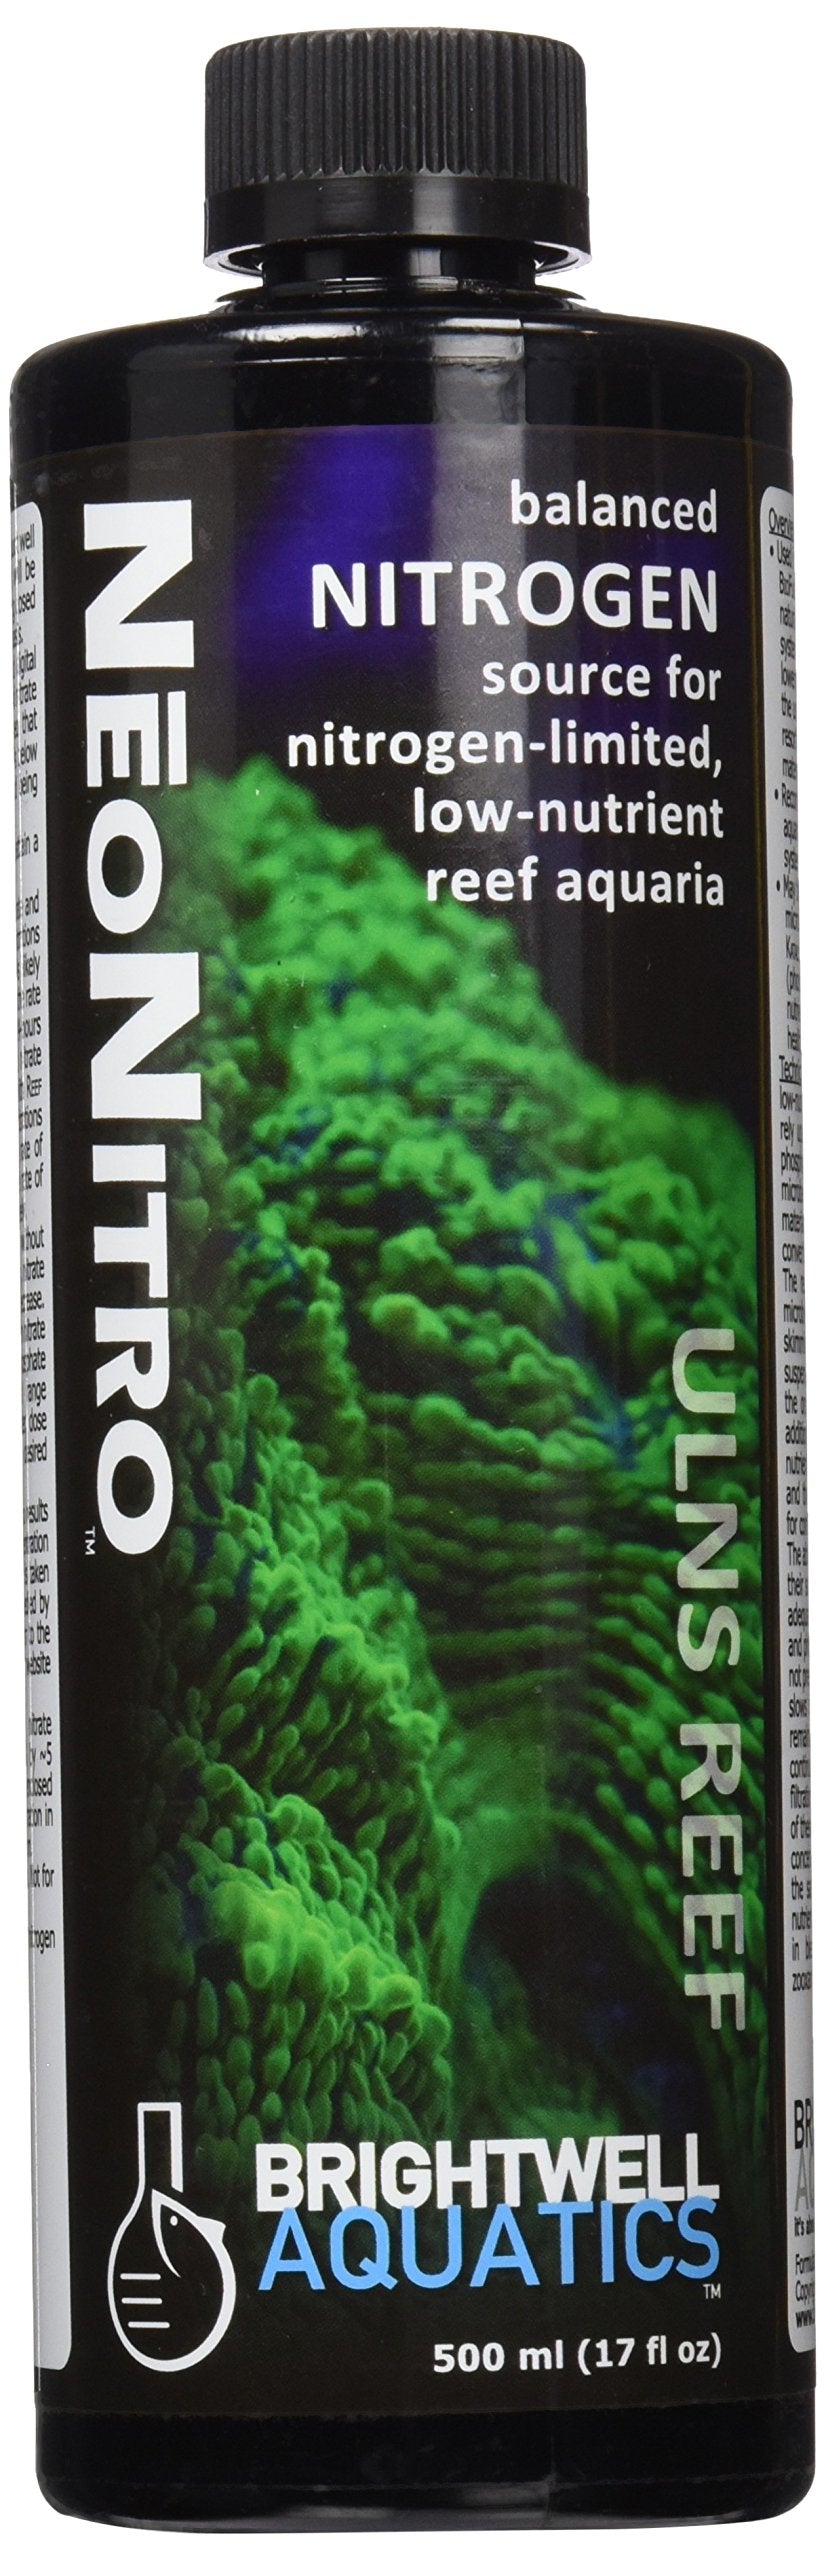 Brightwell Aquatics NeoNitro - Liquid Nitrogen Supplement for Low Nutrient Reef Aquarium Tanks 500 mL - BeesActive Australia